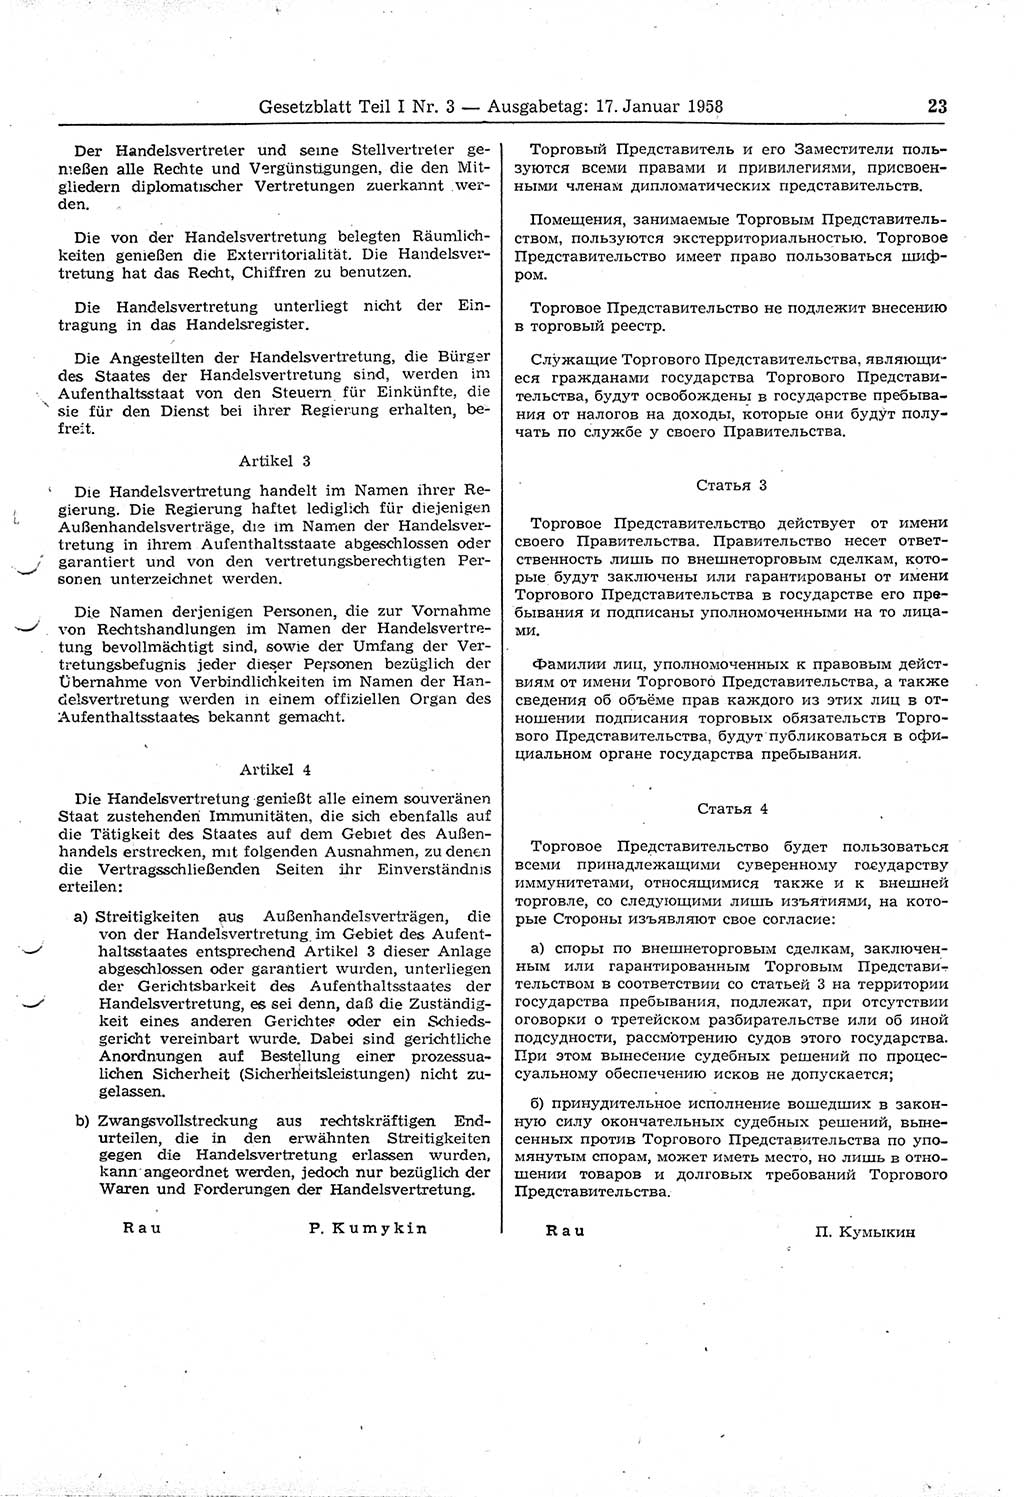 Gesetzblatt (GBl.) der Deutschen Demokratischen Republik (DDR) Teil Ⅰ 1958, Seite 23 (GBl. DDR Ⅰ 1958, S. 23)